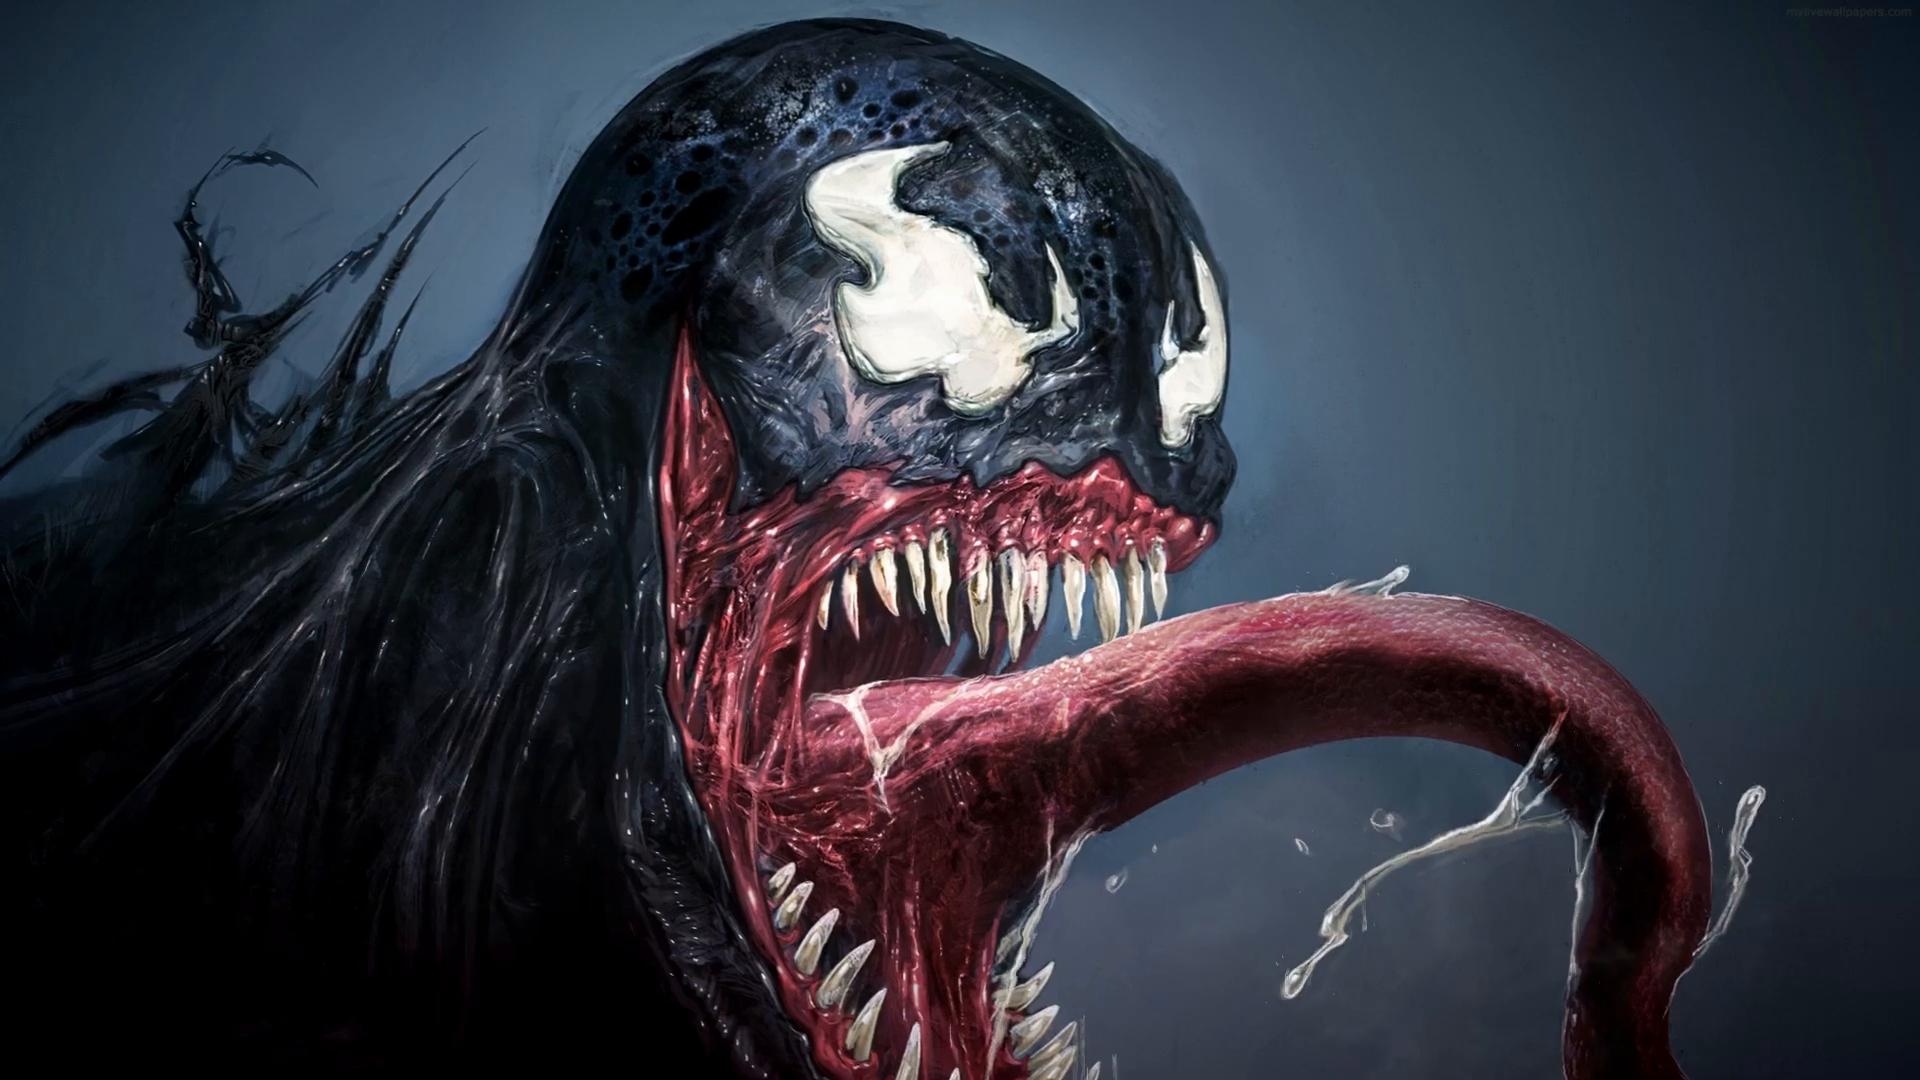 20 Venom And SpiderMan Desktop Wallpapers  WallpaperSafari